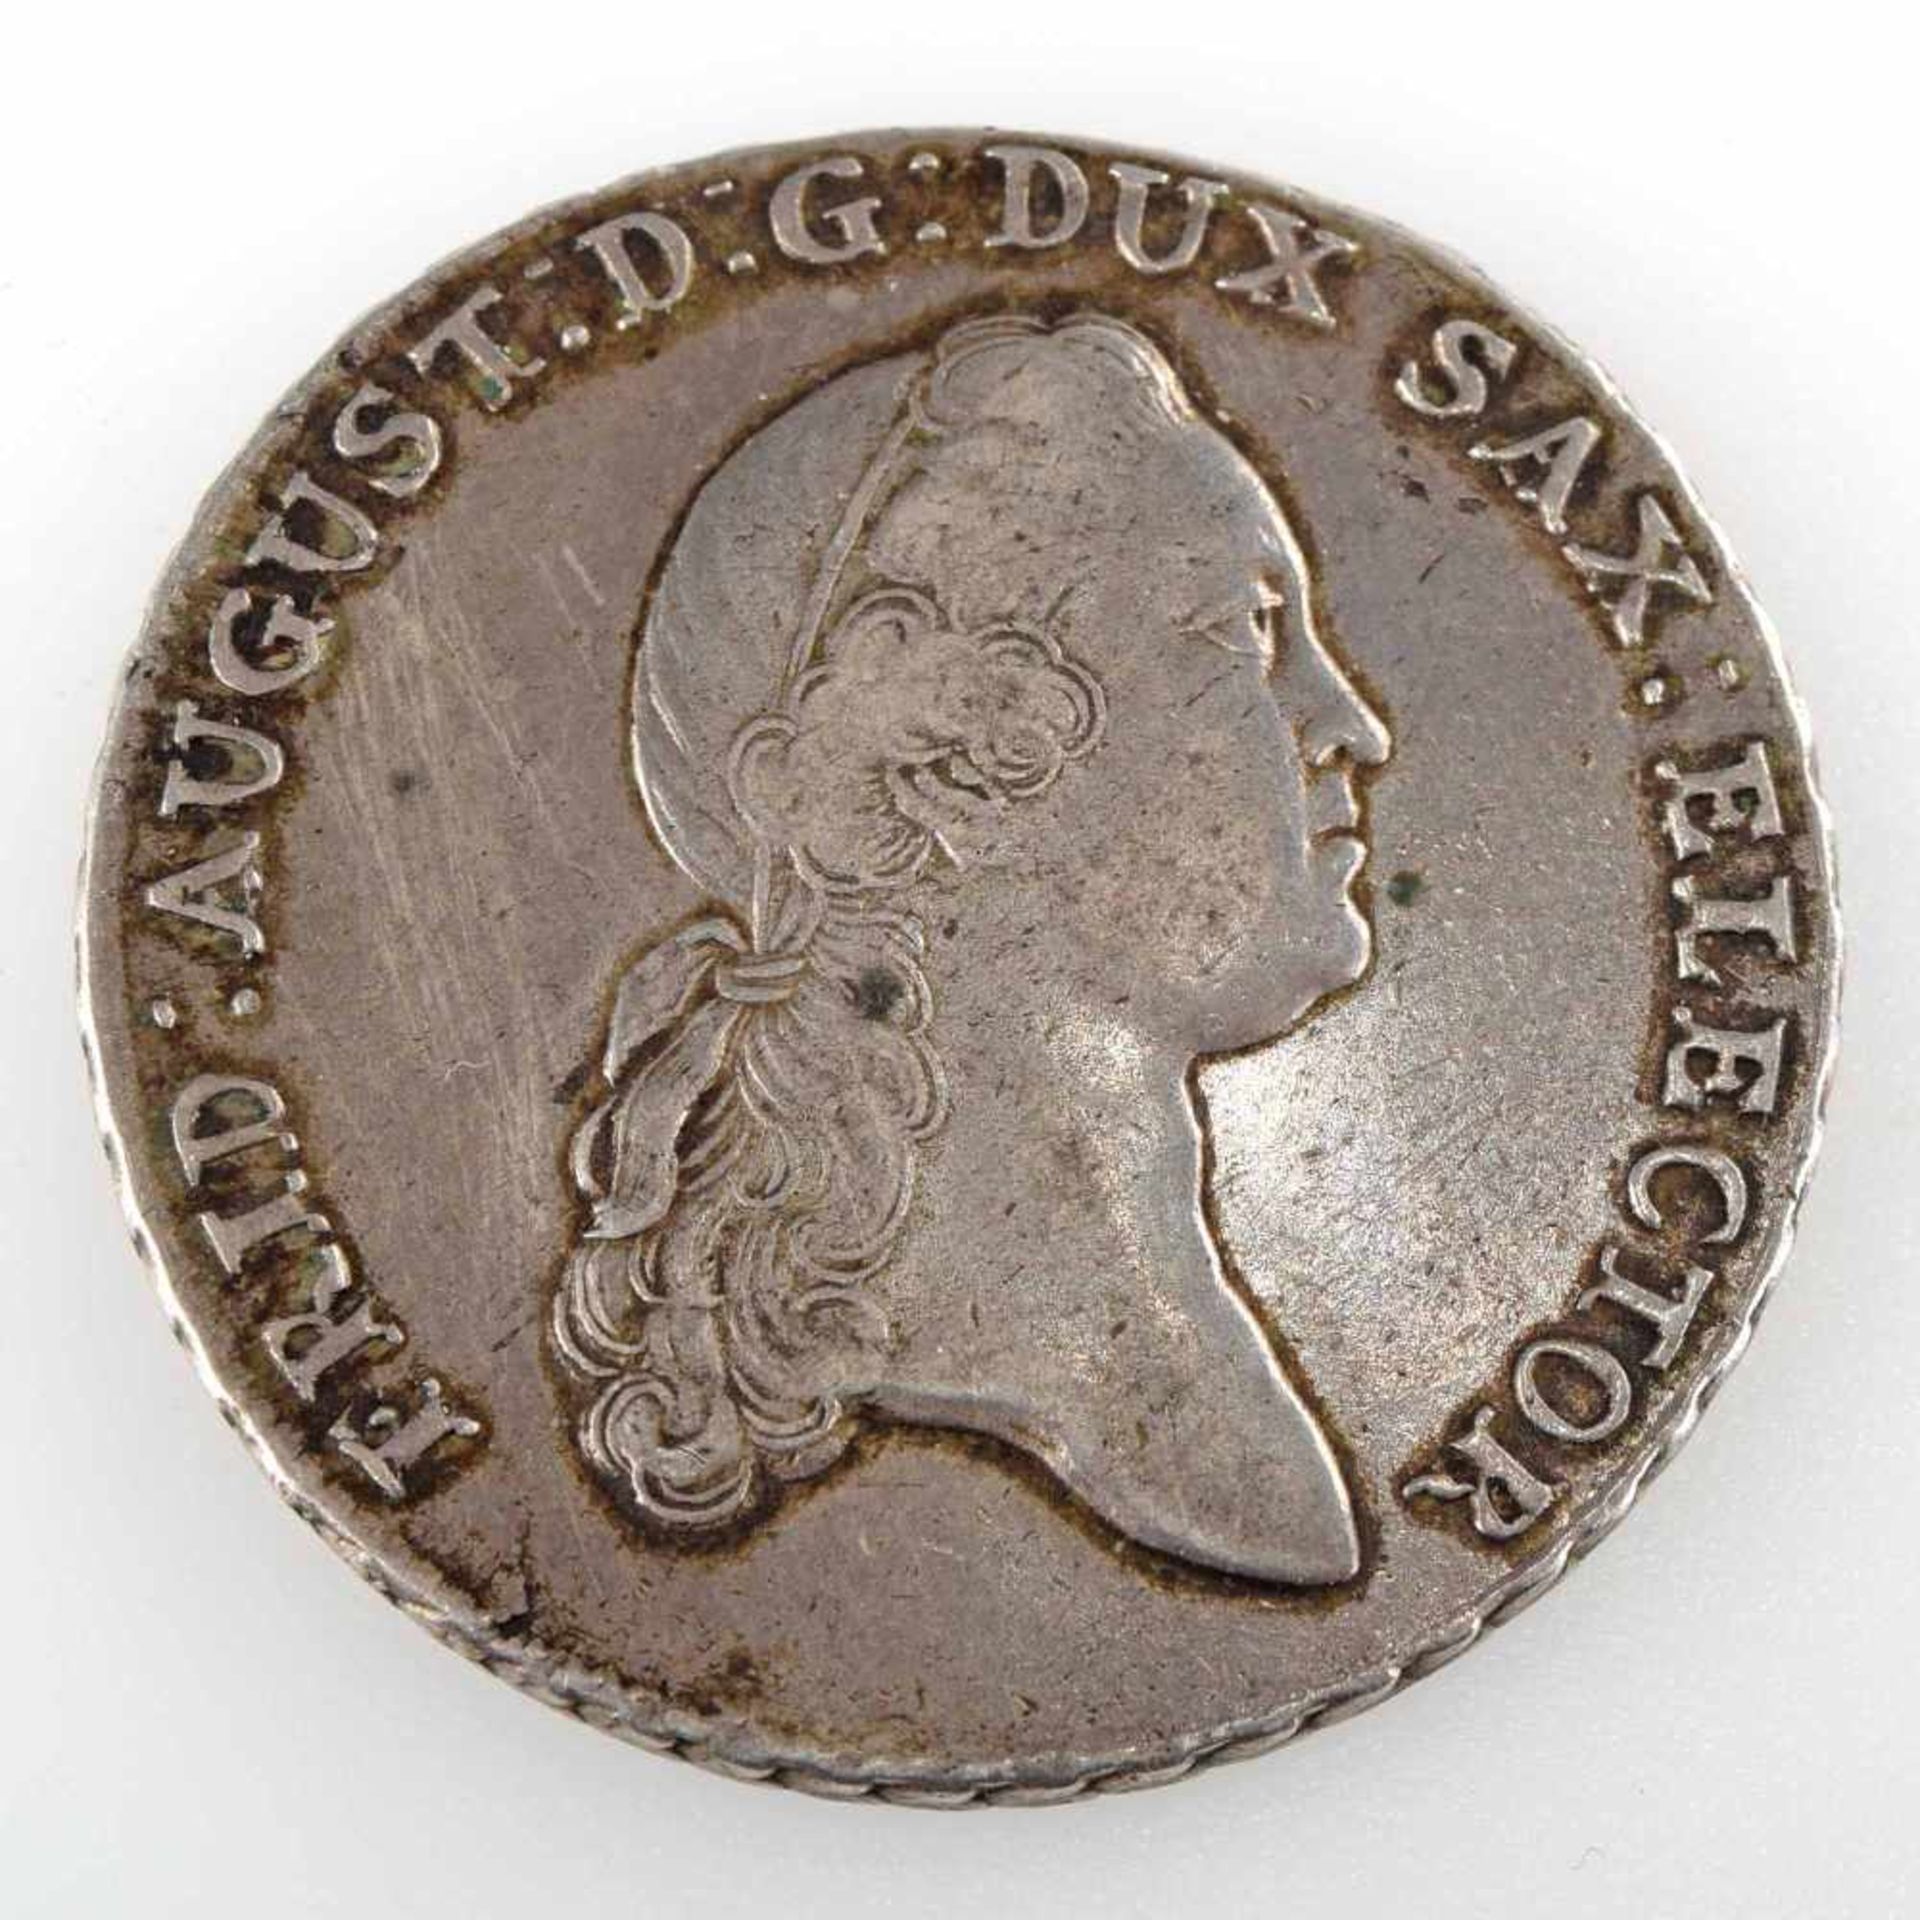 Silbertaler Sachsen 1773 Taler, Sachsen, Albertinische Linie Friedrich August III. (1763 - 1806), - Image 2 of 3